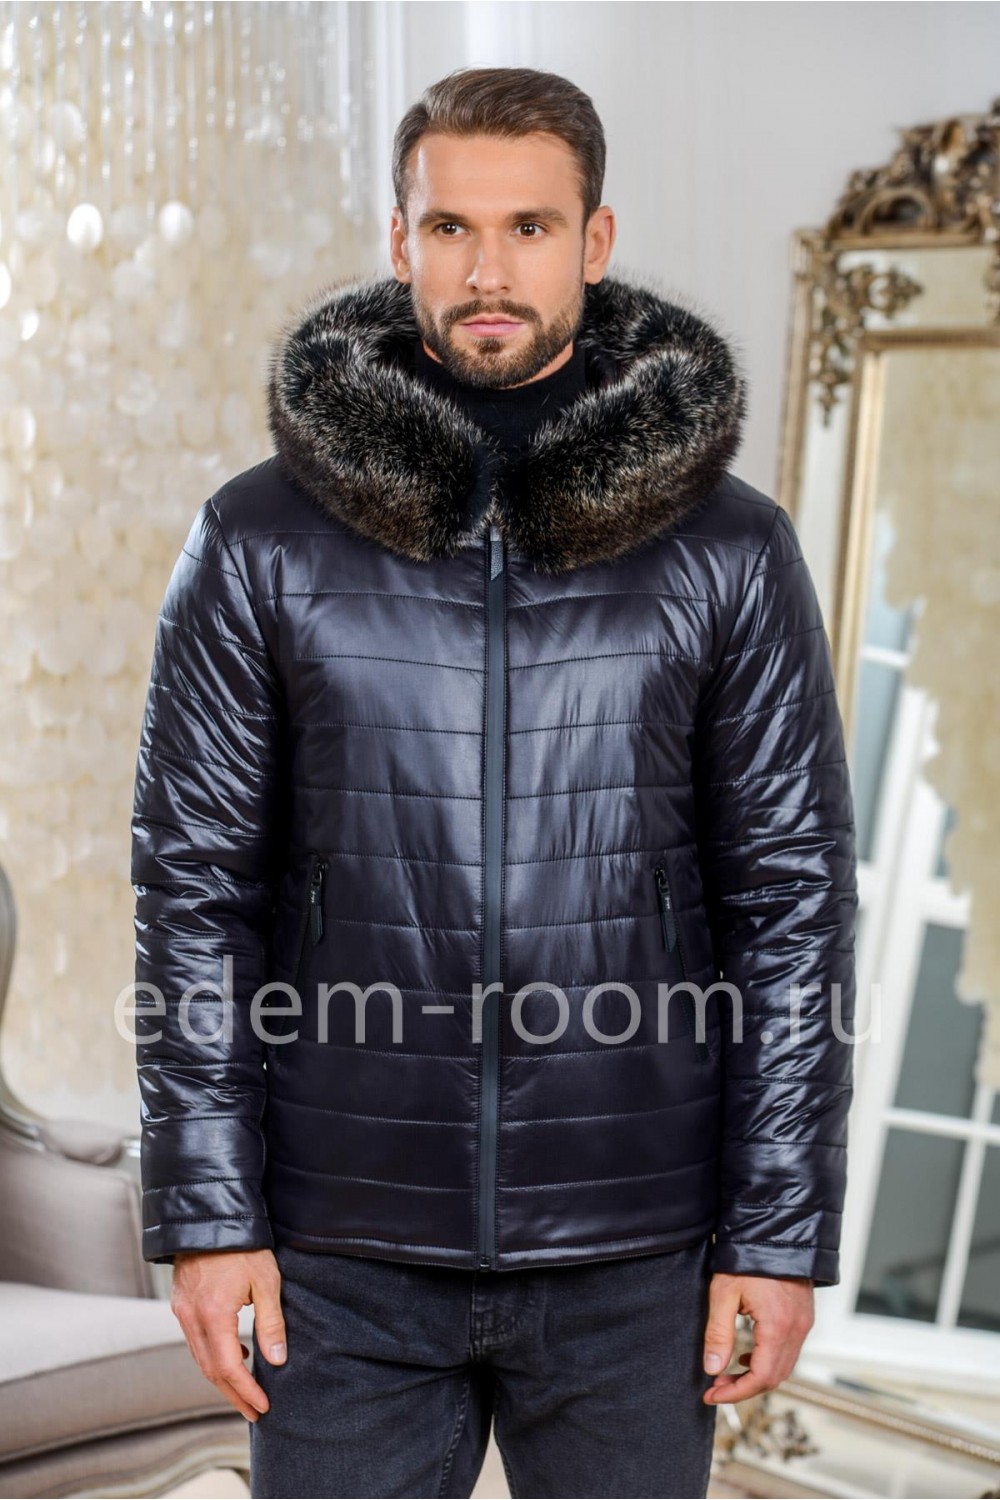 Куртки мужские осень-зима купить в Москве недорого - Интернет-магазин Легионер